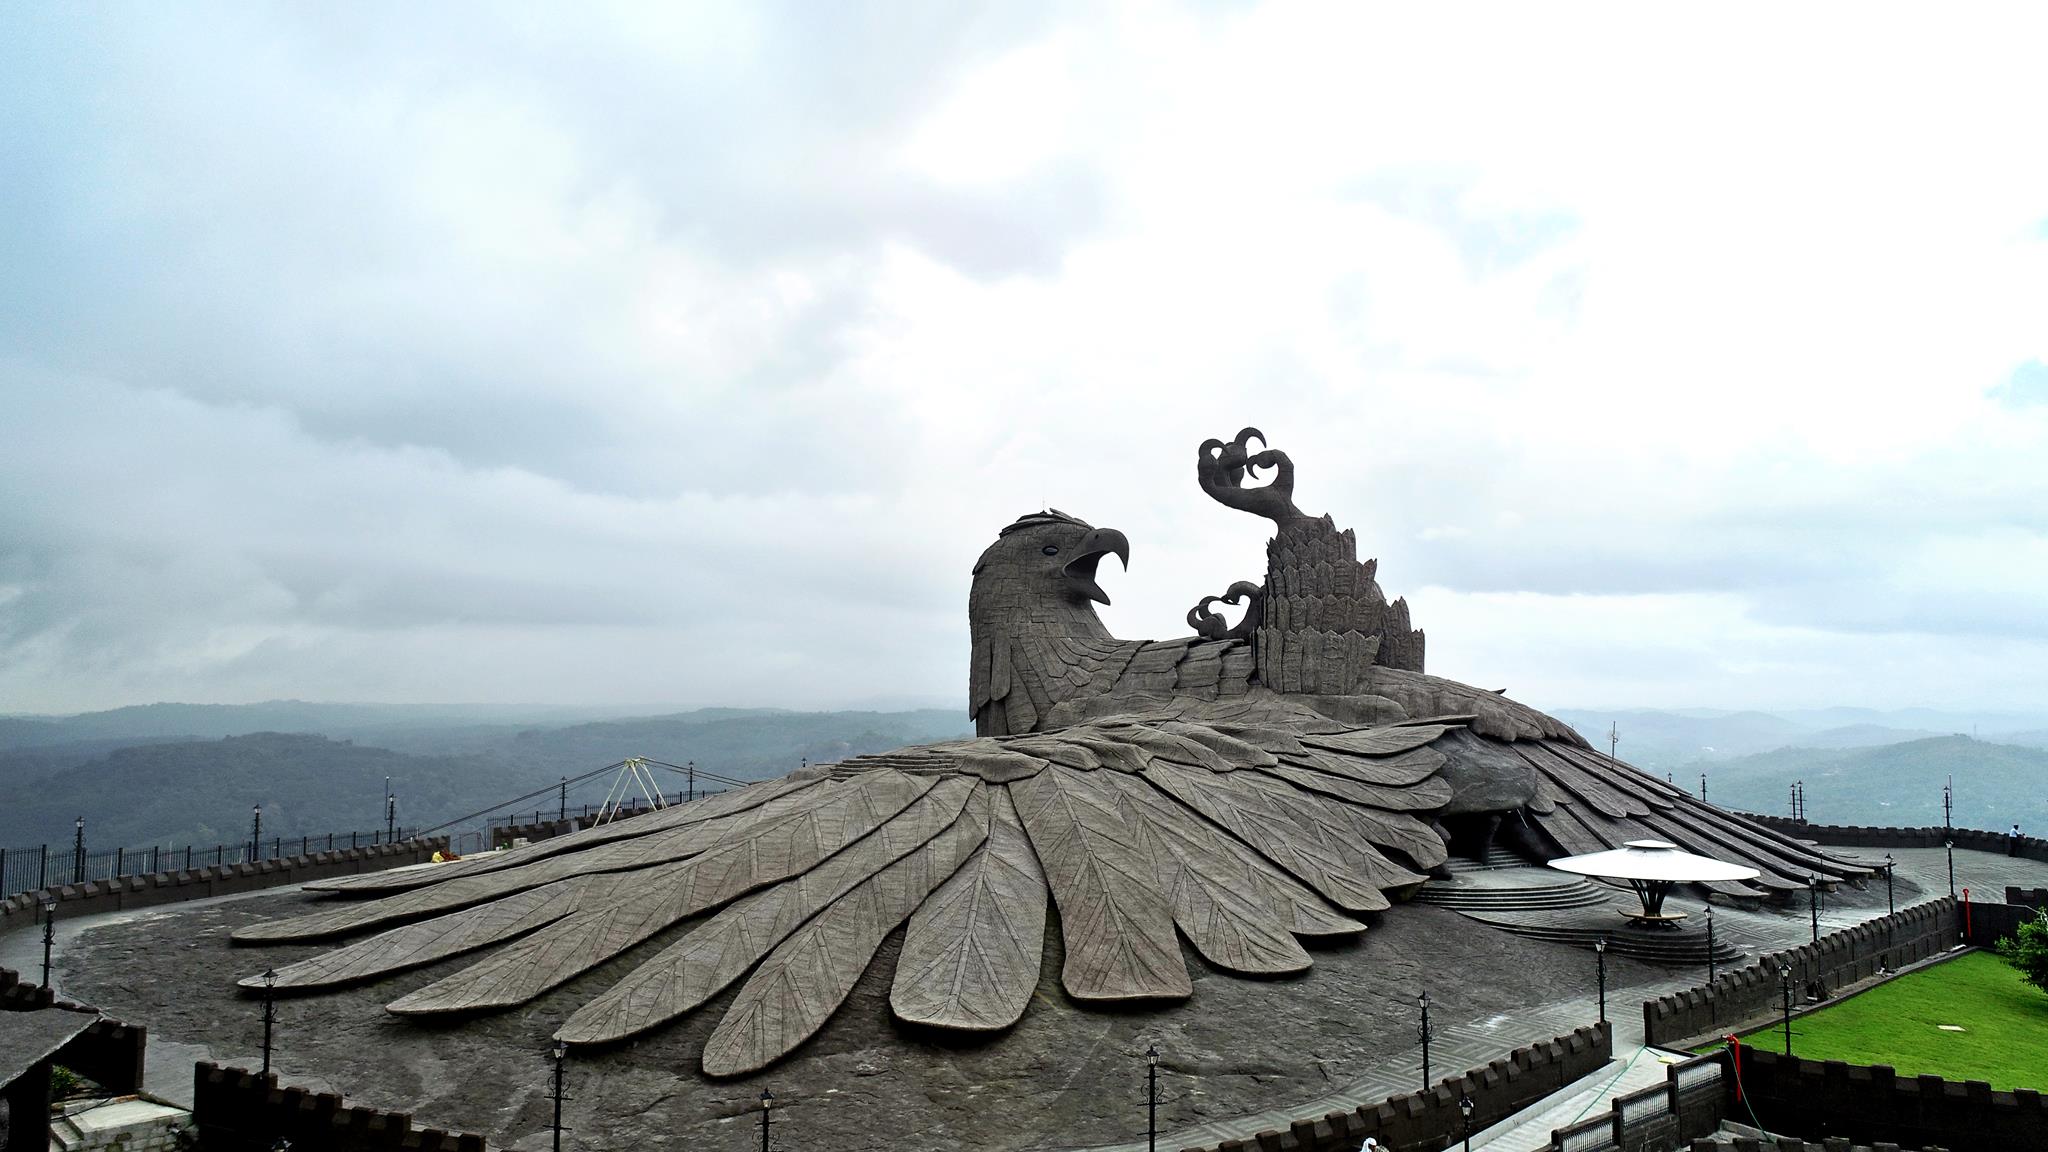 jatayu-bird-sculpture-00